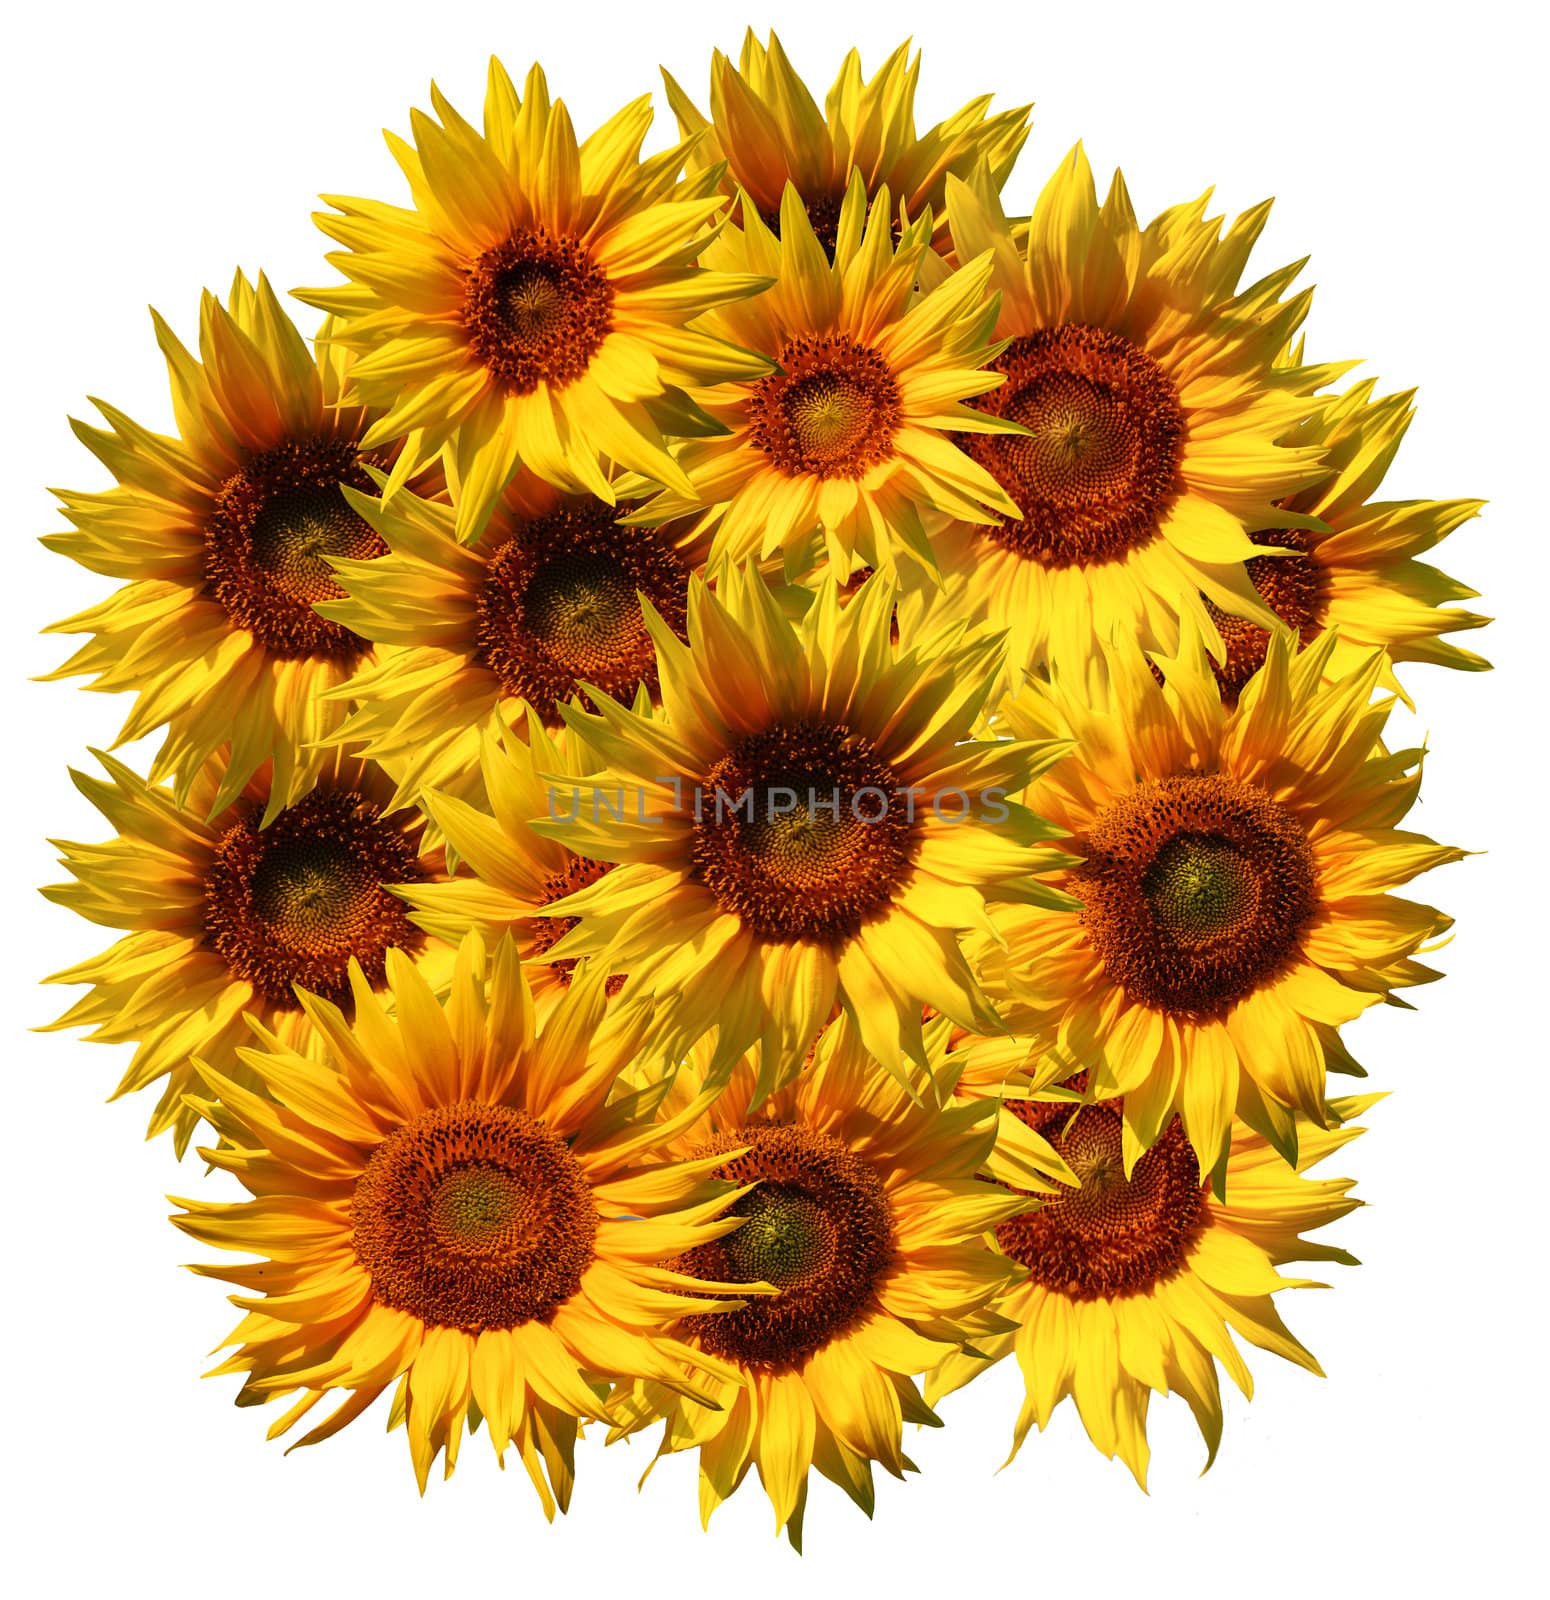 sunflowers pattern by velkol